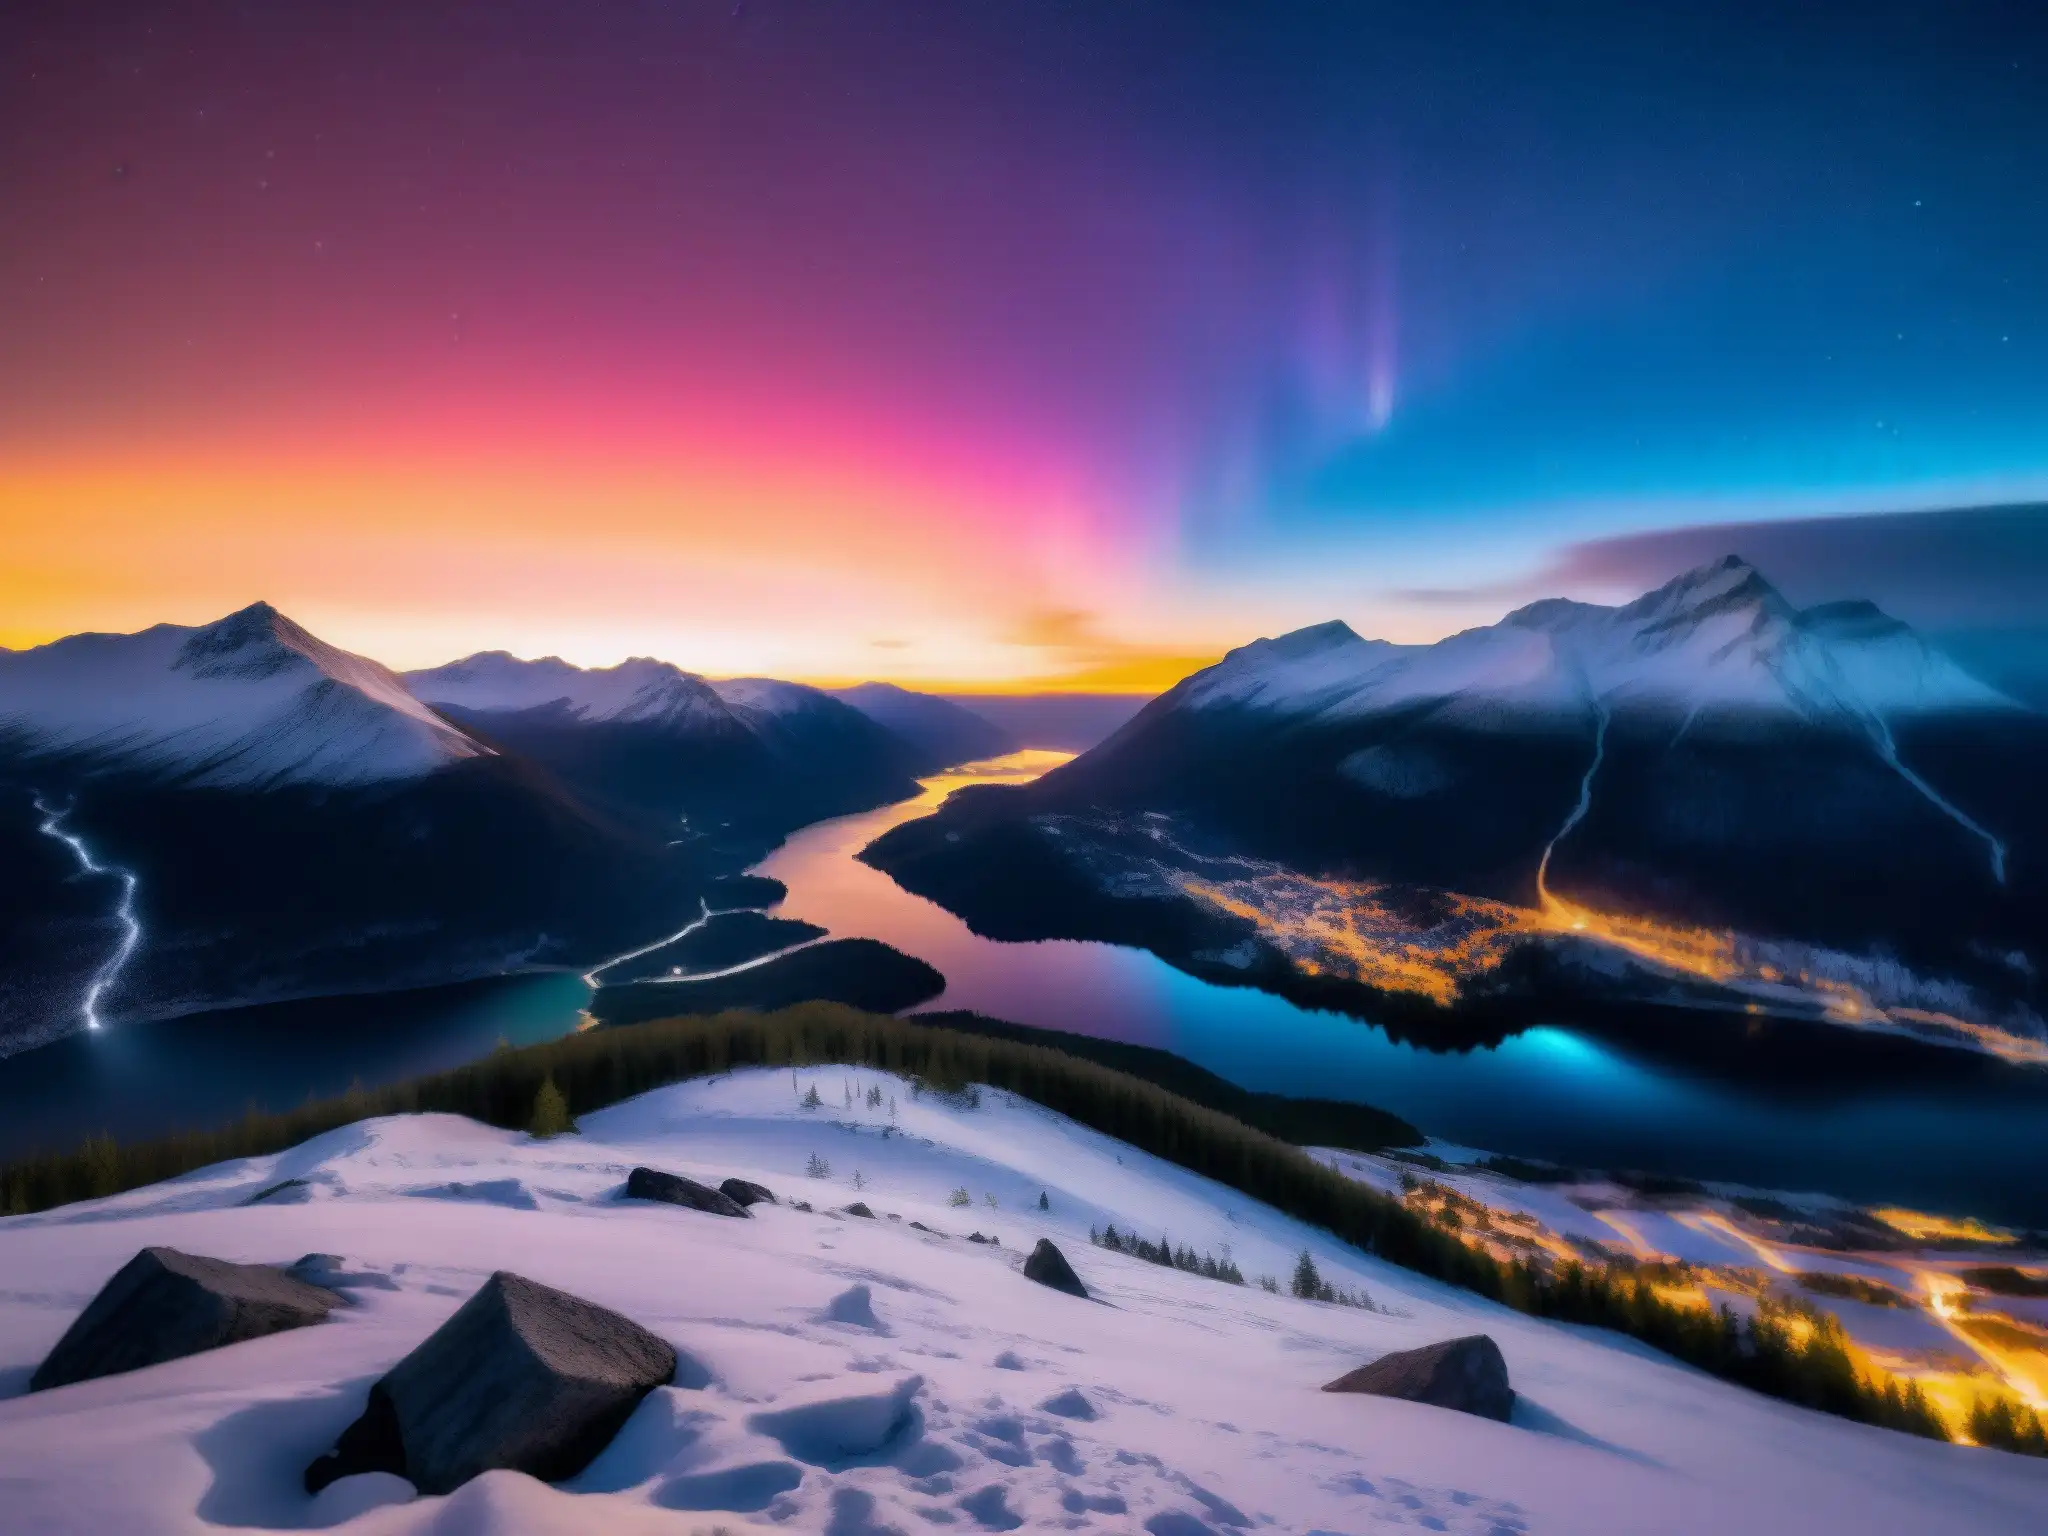 Imagen del fenómeno de luces en Hessdalen, Canadá, iluminando el paisaje nocturno con un brillo misterioso y etéreo